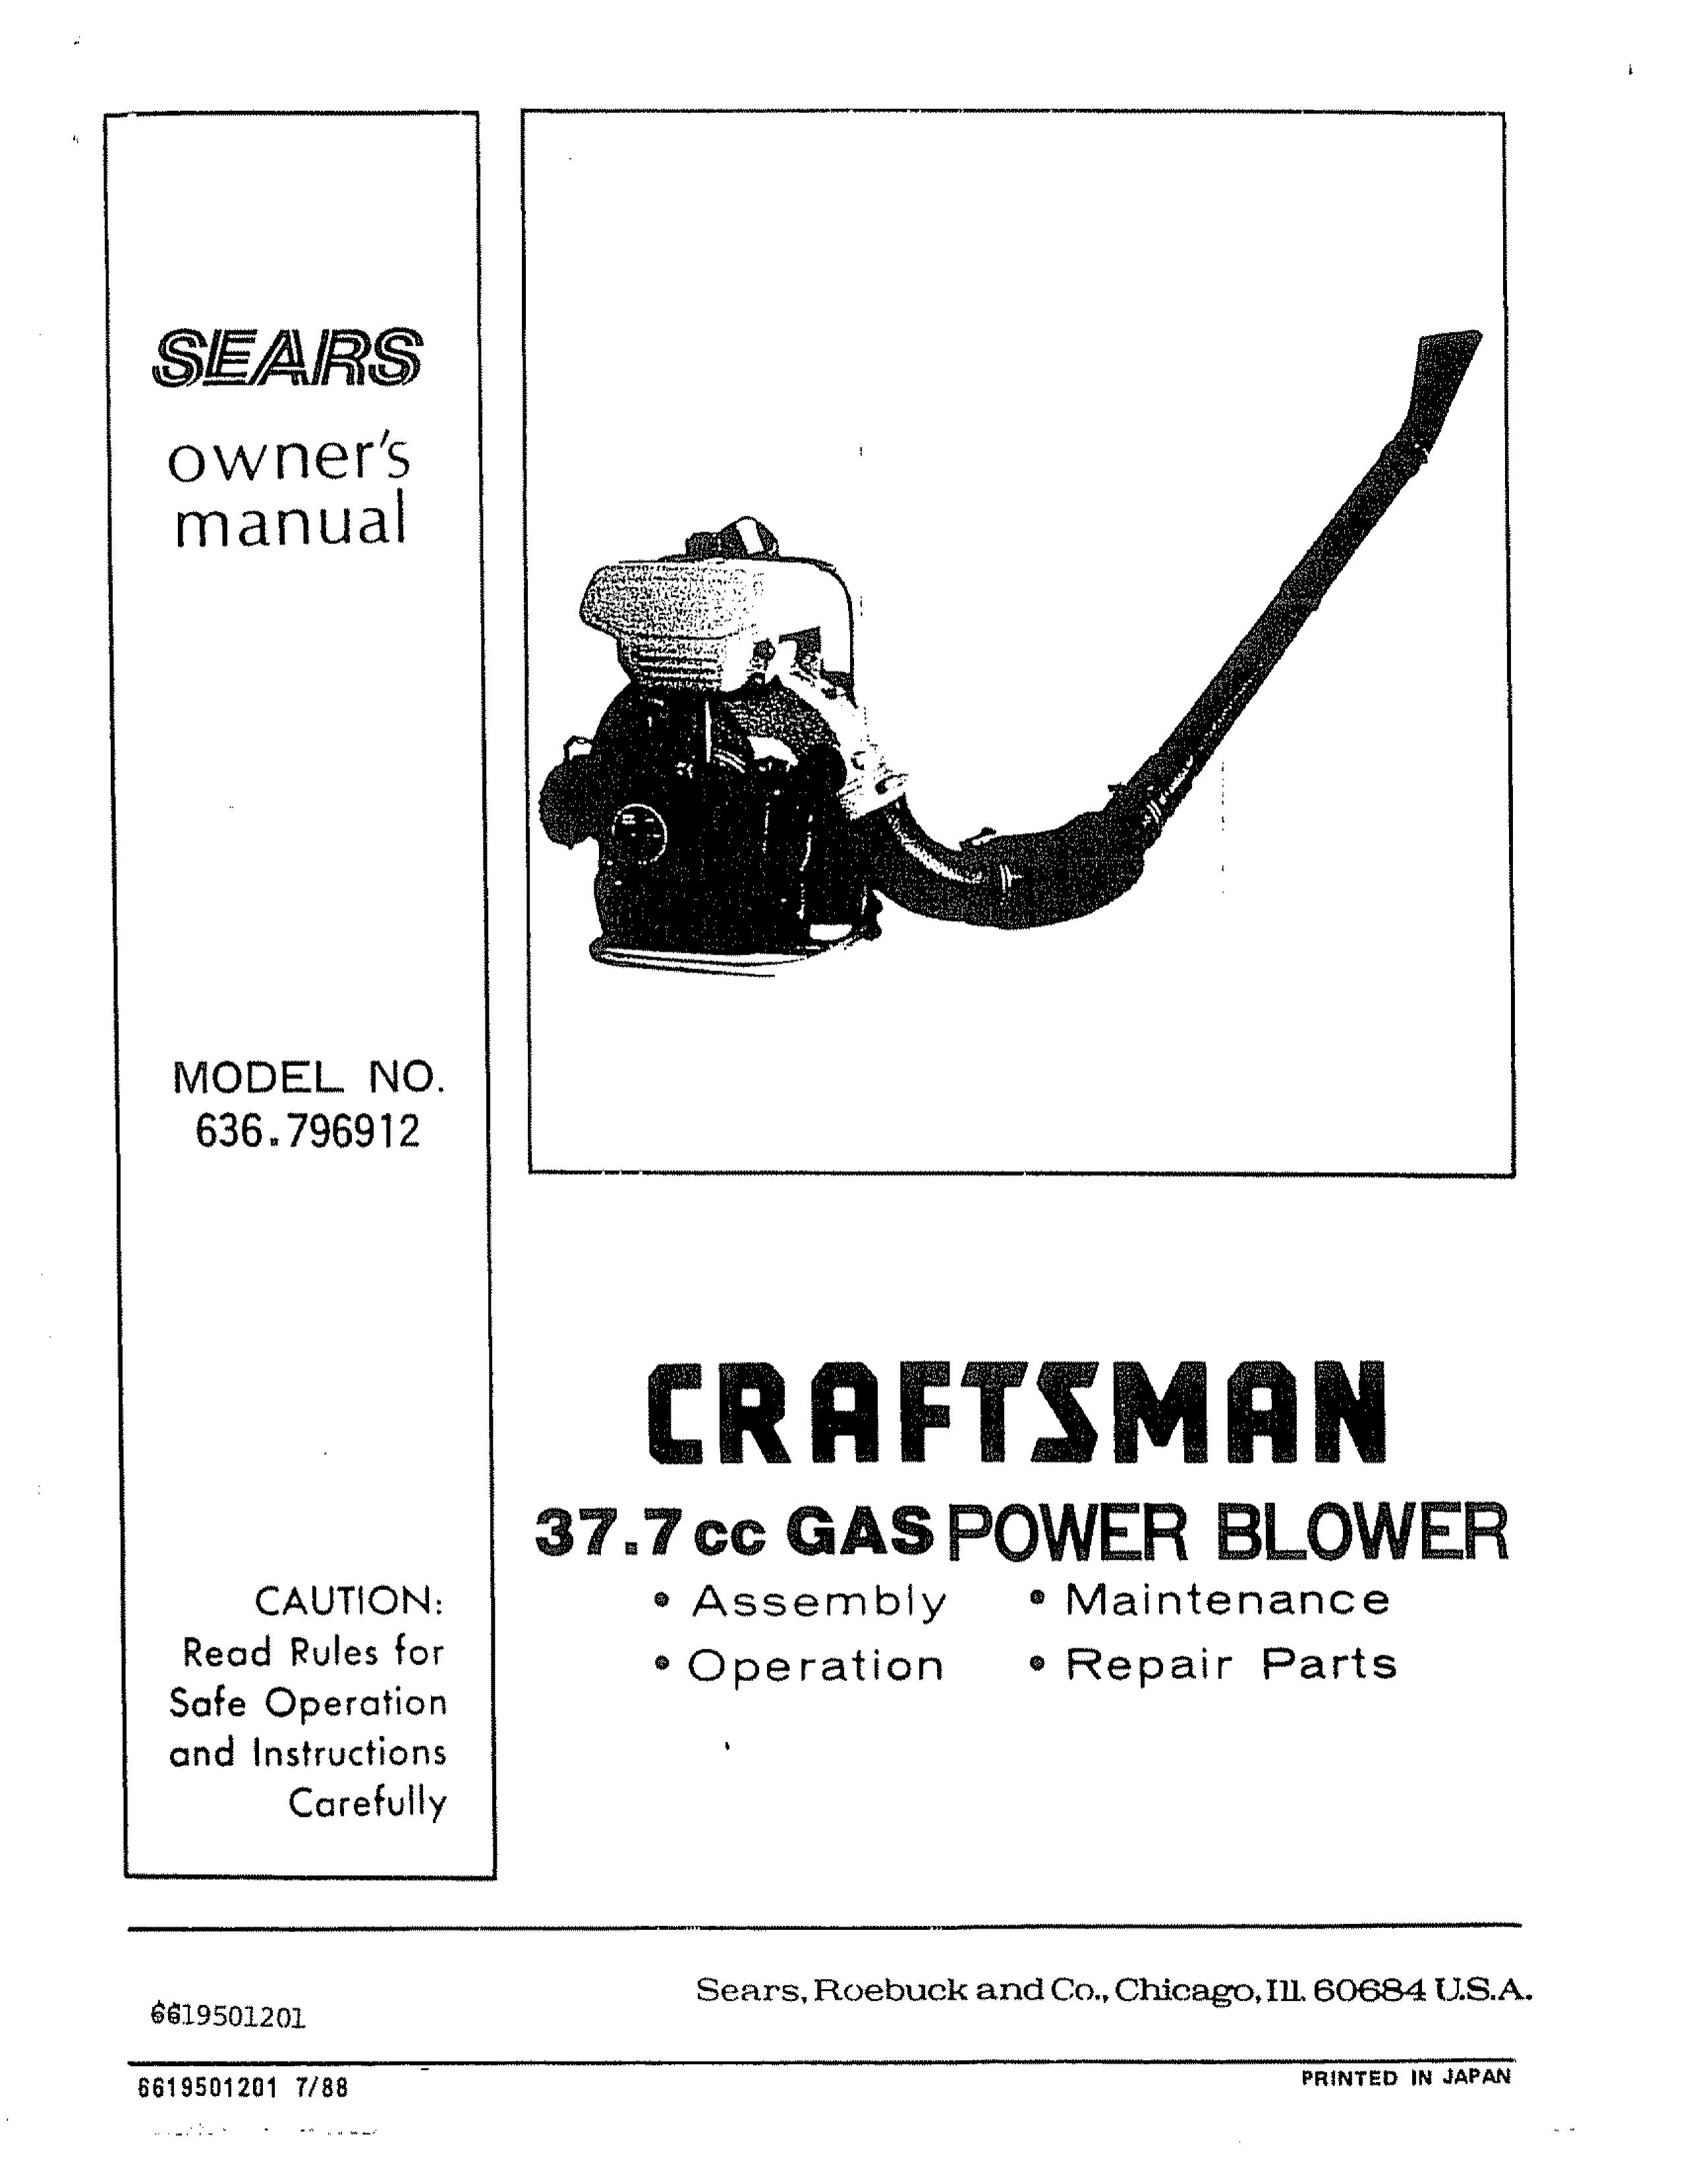 Craftsman 636.796912 Blower User Manual